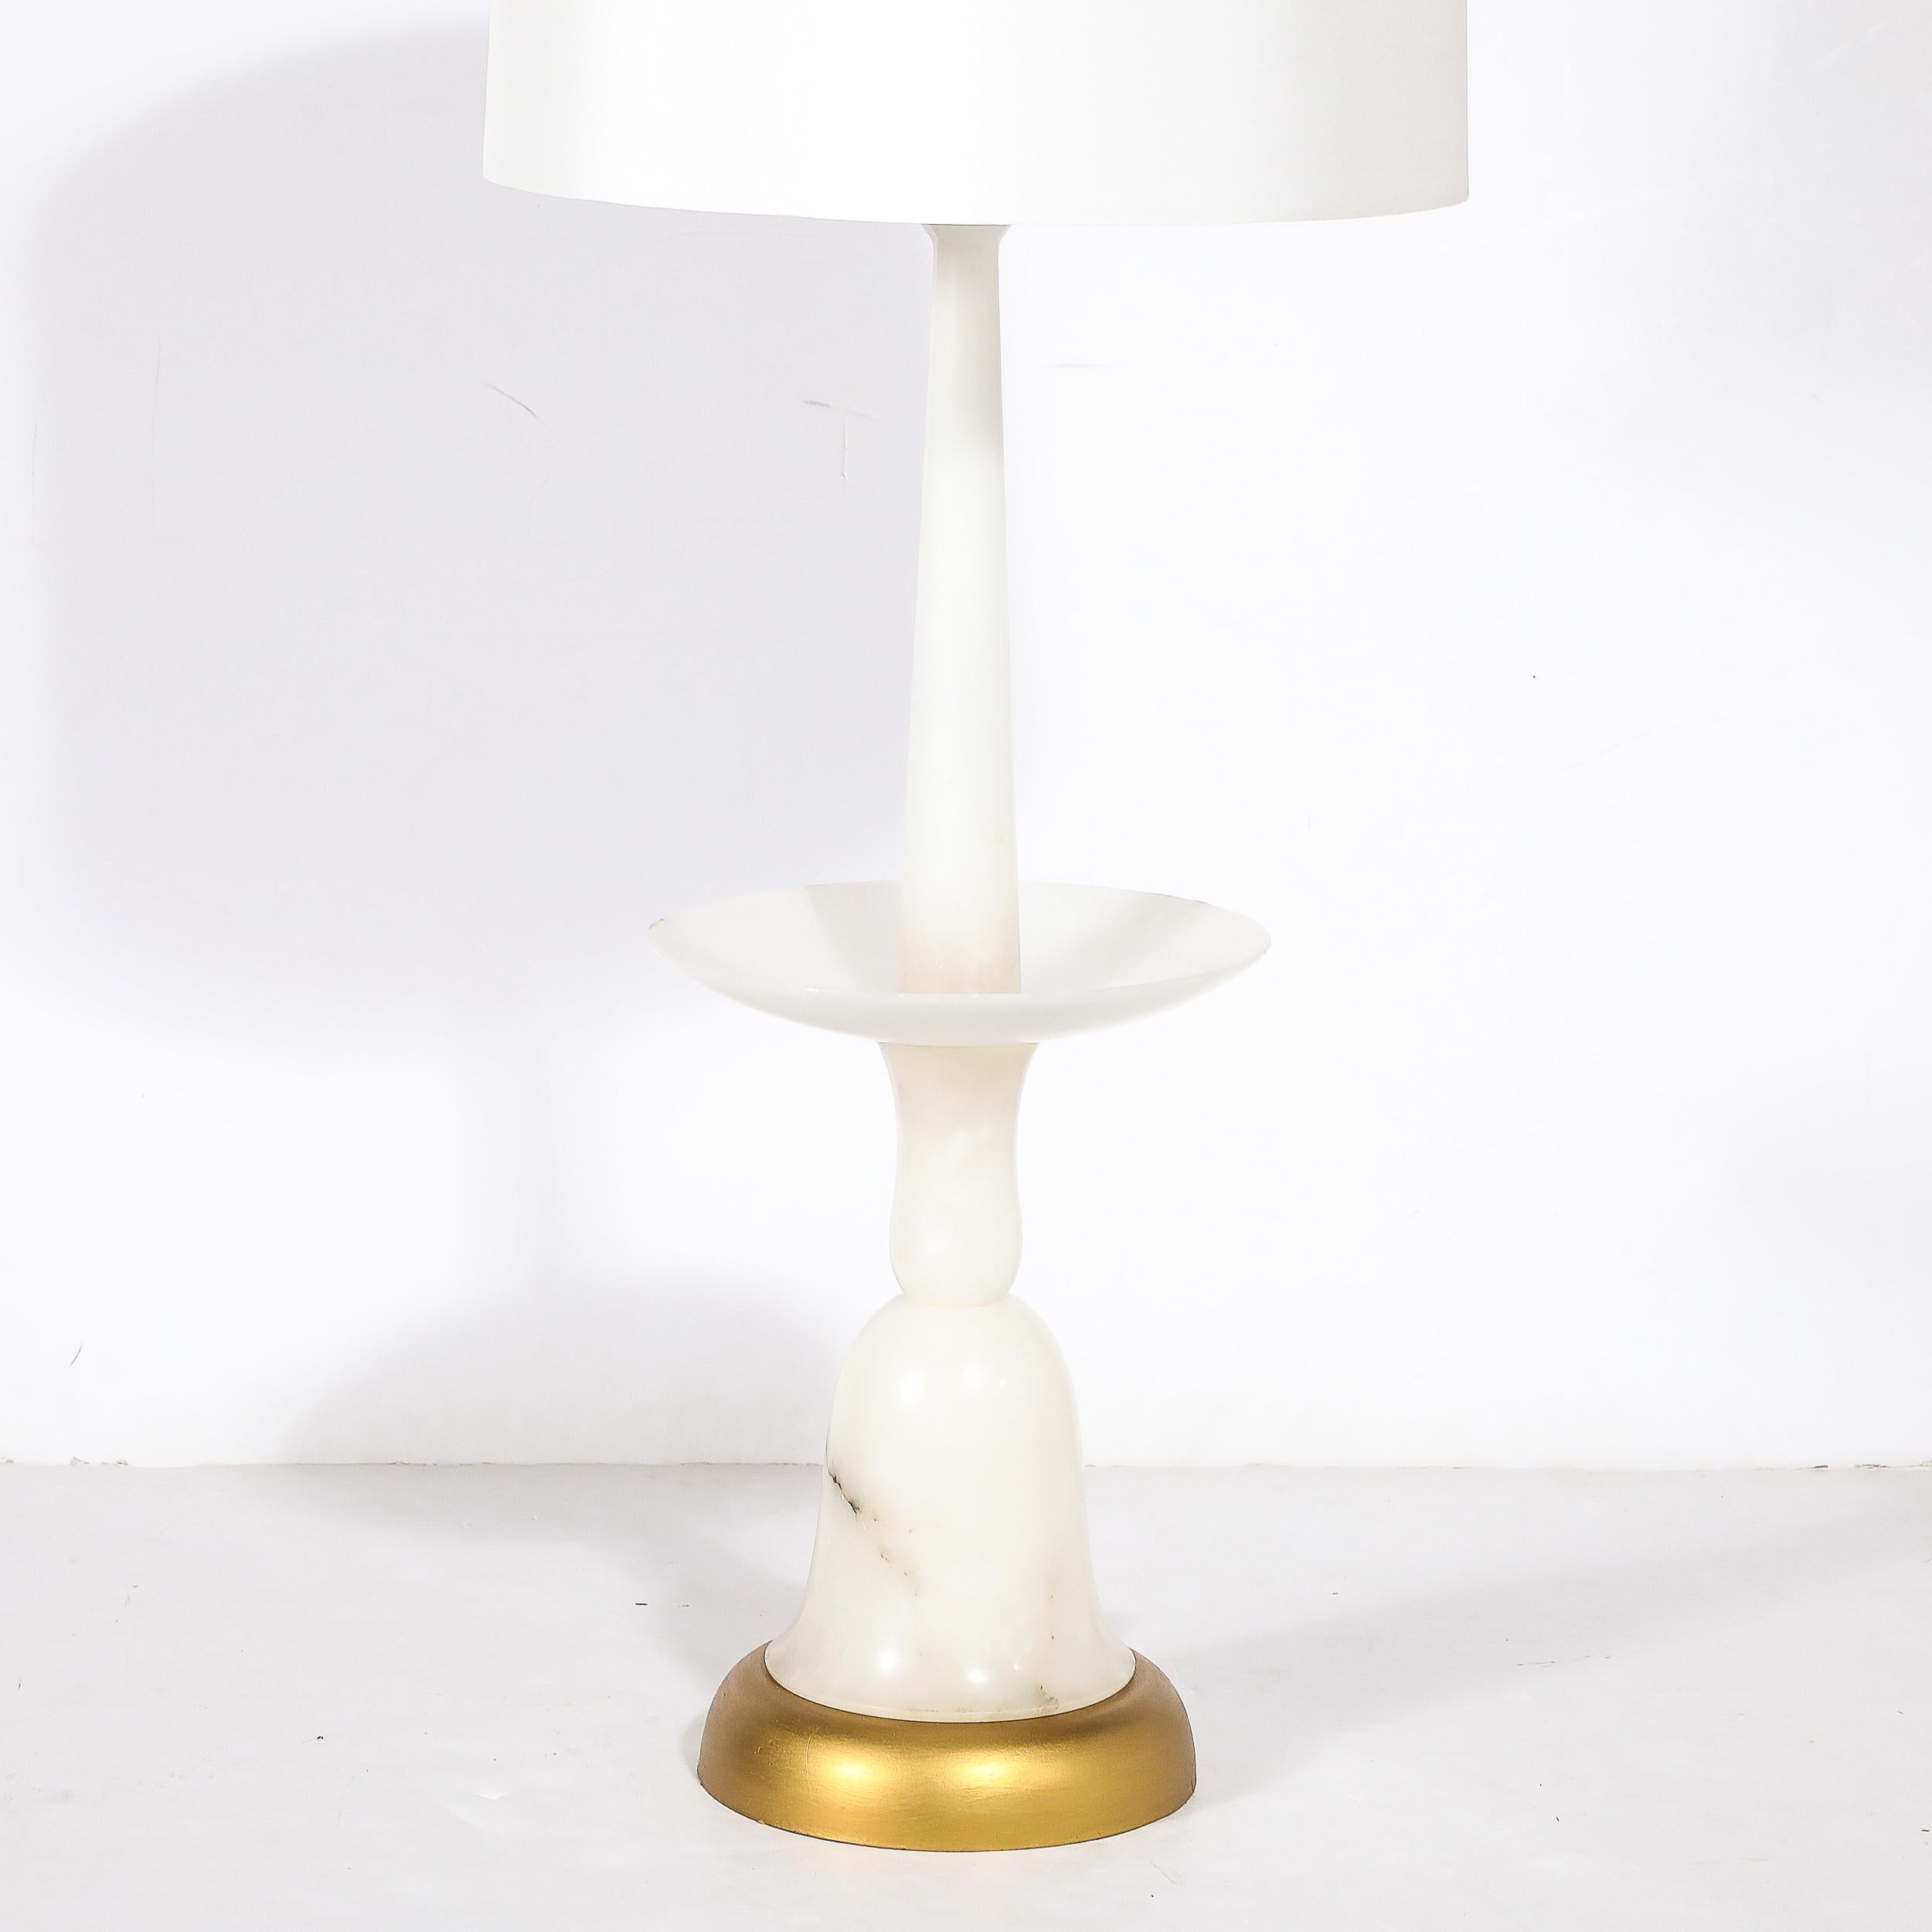 Diese einzigartige und gut proportionierte skulpturale Balustraden-Tischlampe aus Carrera-Marmor mit vergoldetem Sockel stammt aus Italien, CIRCA 1960. Eine schöne Silhouette mit elegant geschwungenen Linien und Details aus übereinander gestapelten